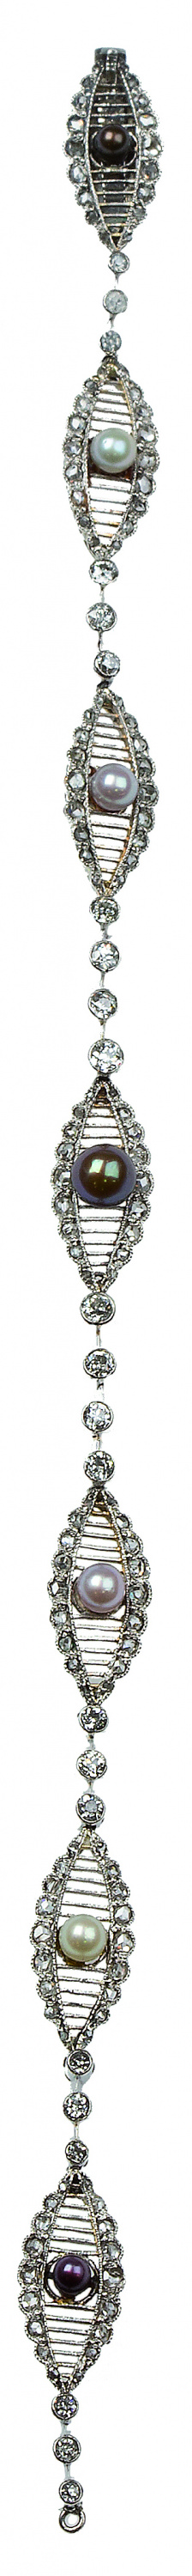 122.  Pulsera Art-Decó con siete centros ojivales de diamantes con perlas blancas y negras alternas